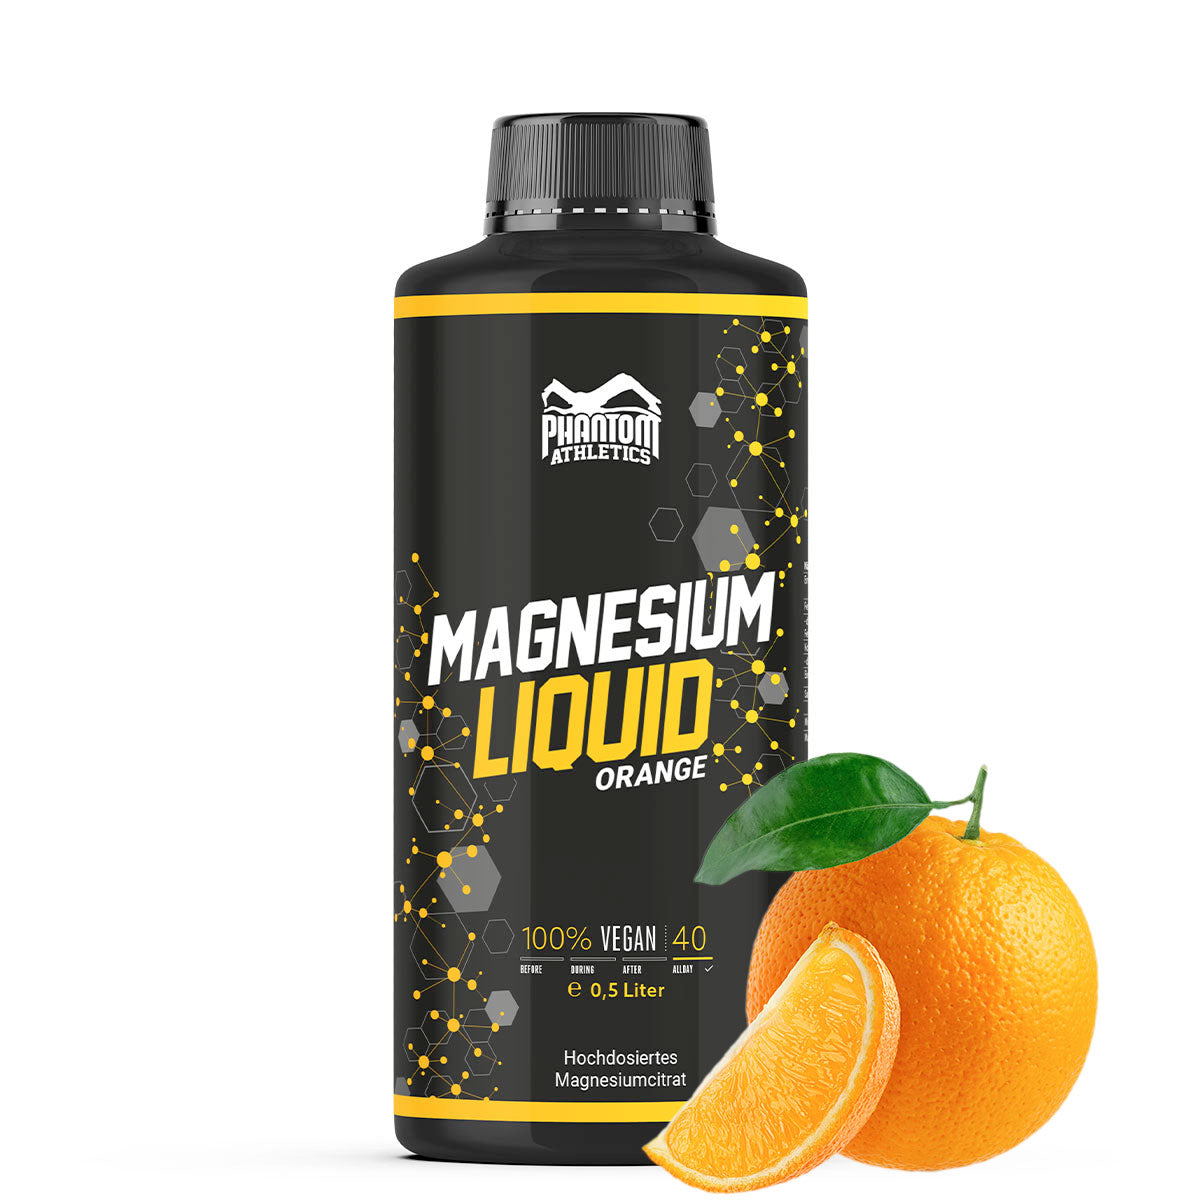 Phantom Magnesium Liquid - Tekutý hořčík pro lepší regeneraci v bojových sportech.